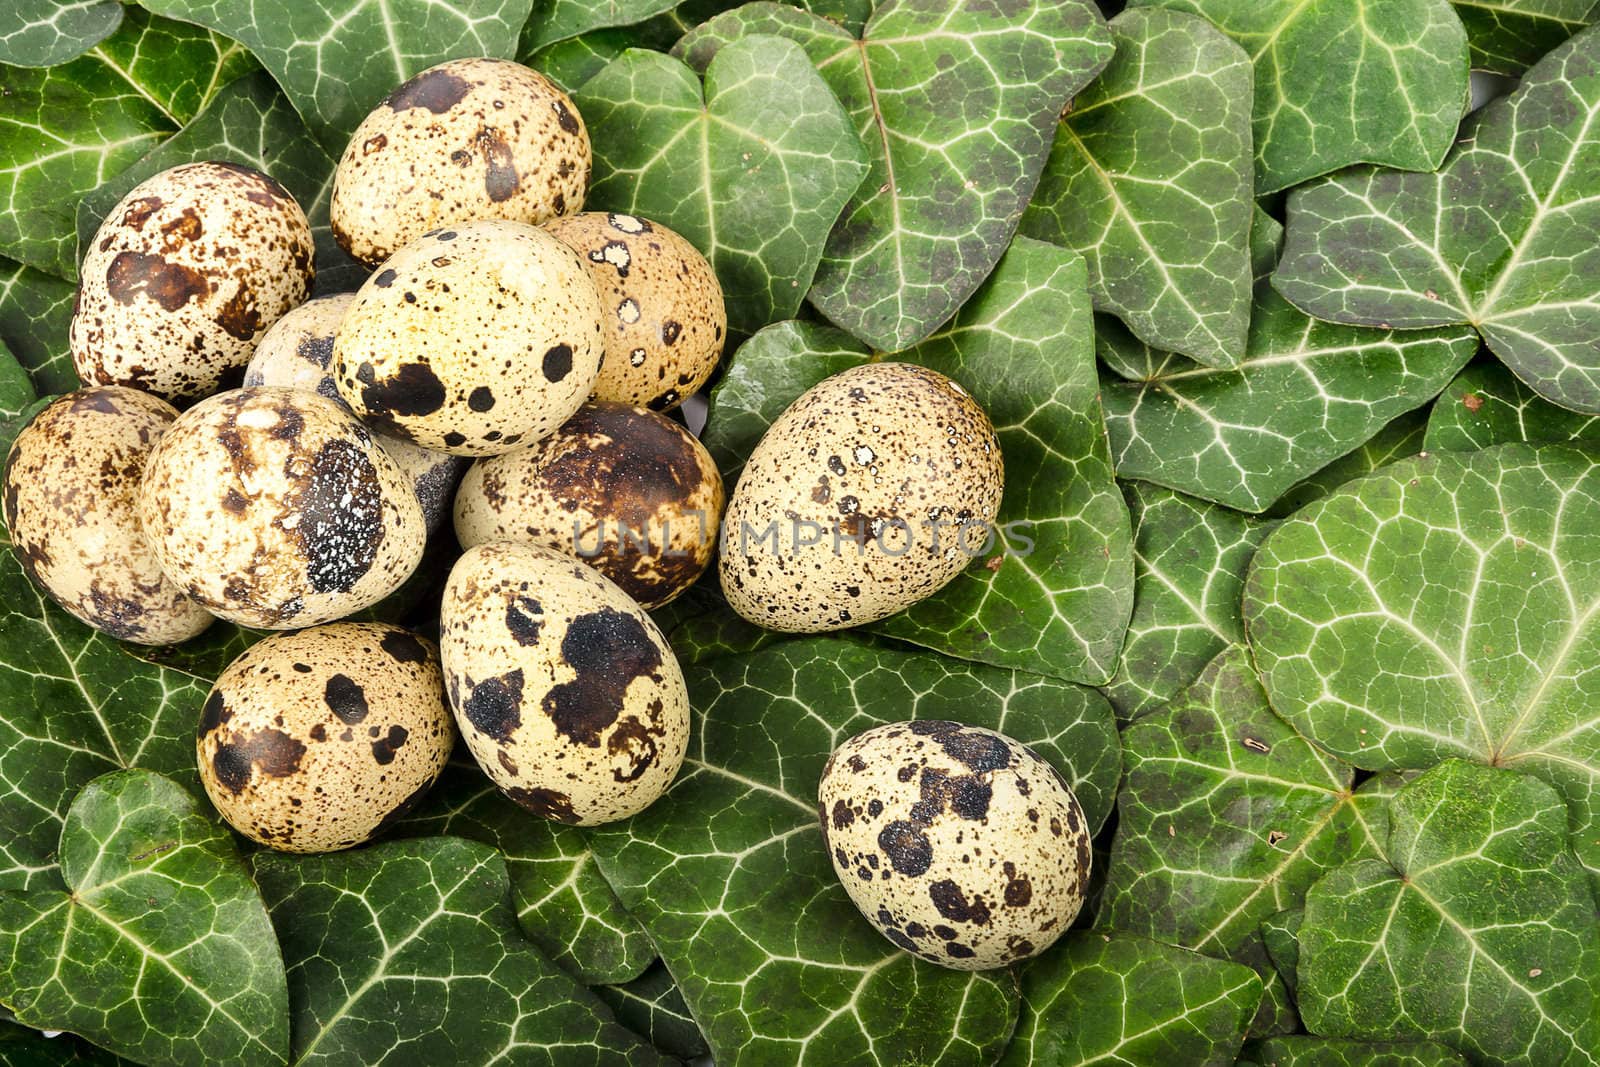 Nest of quail eggs among green leaves by velislava